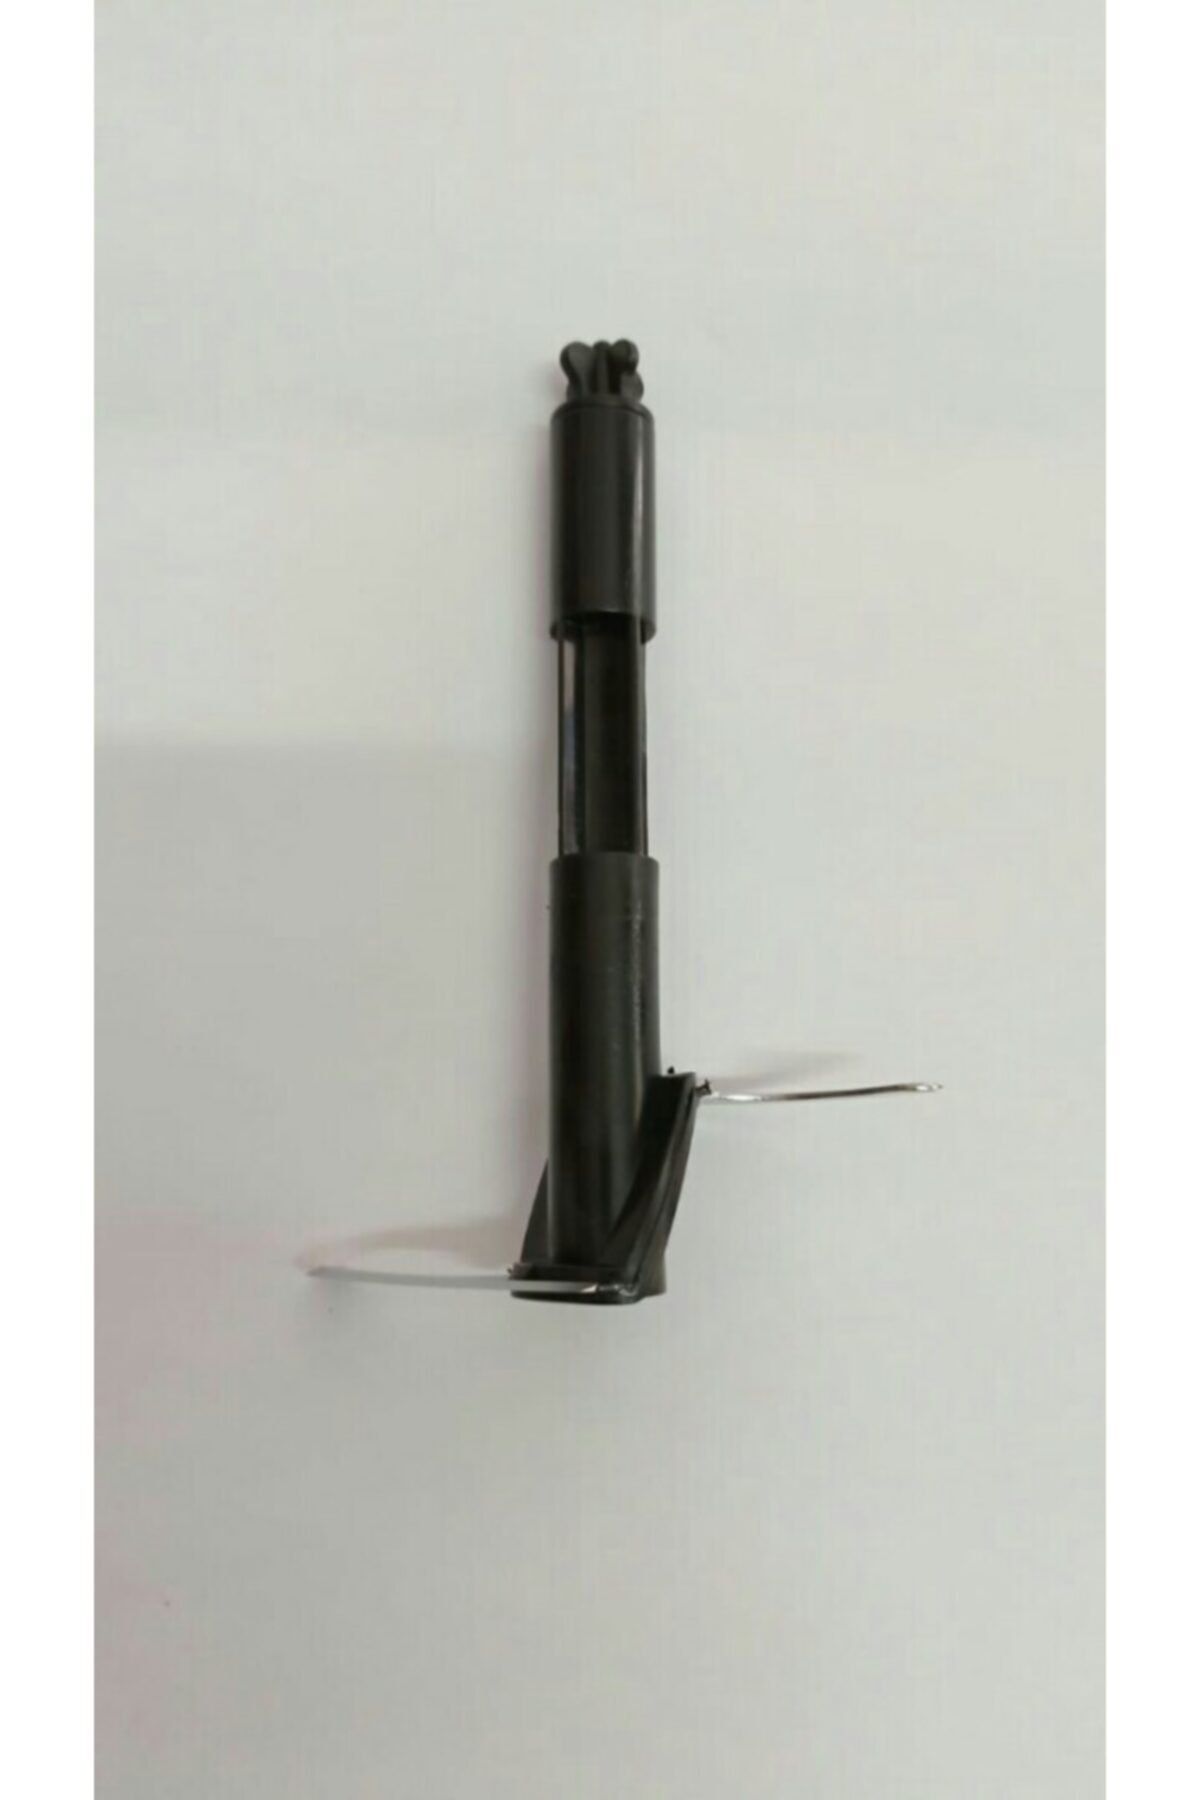 KORKMAZ A445 Vertex Mega Ve A447 Mia Mega Blender Seti Siyah Renk Doğrayıcı Bıçak.